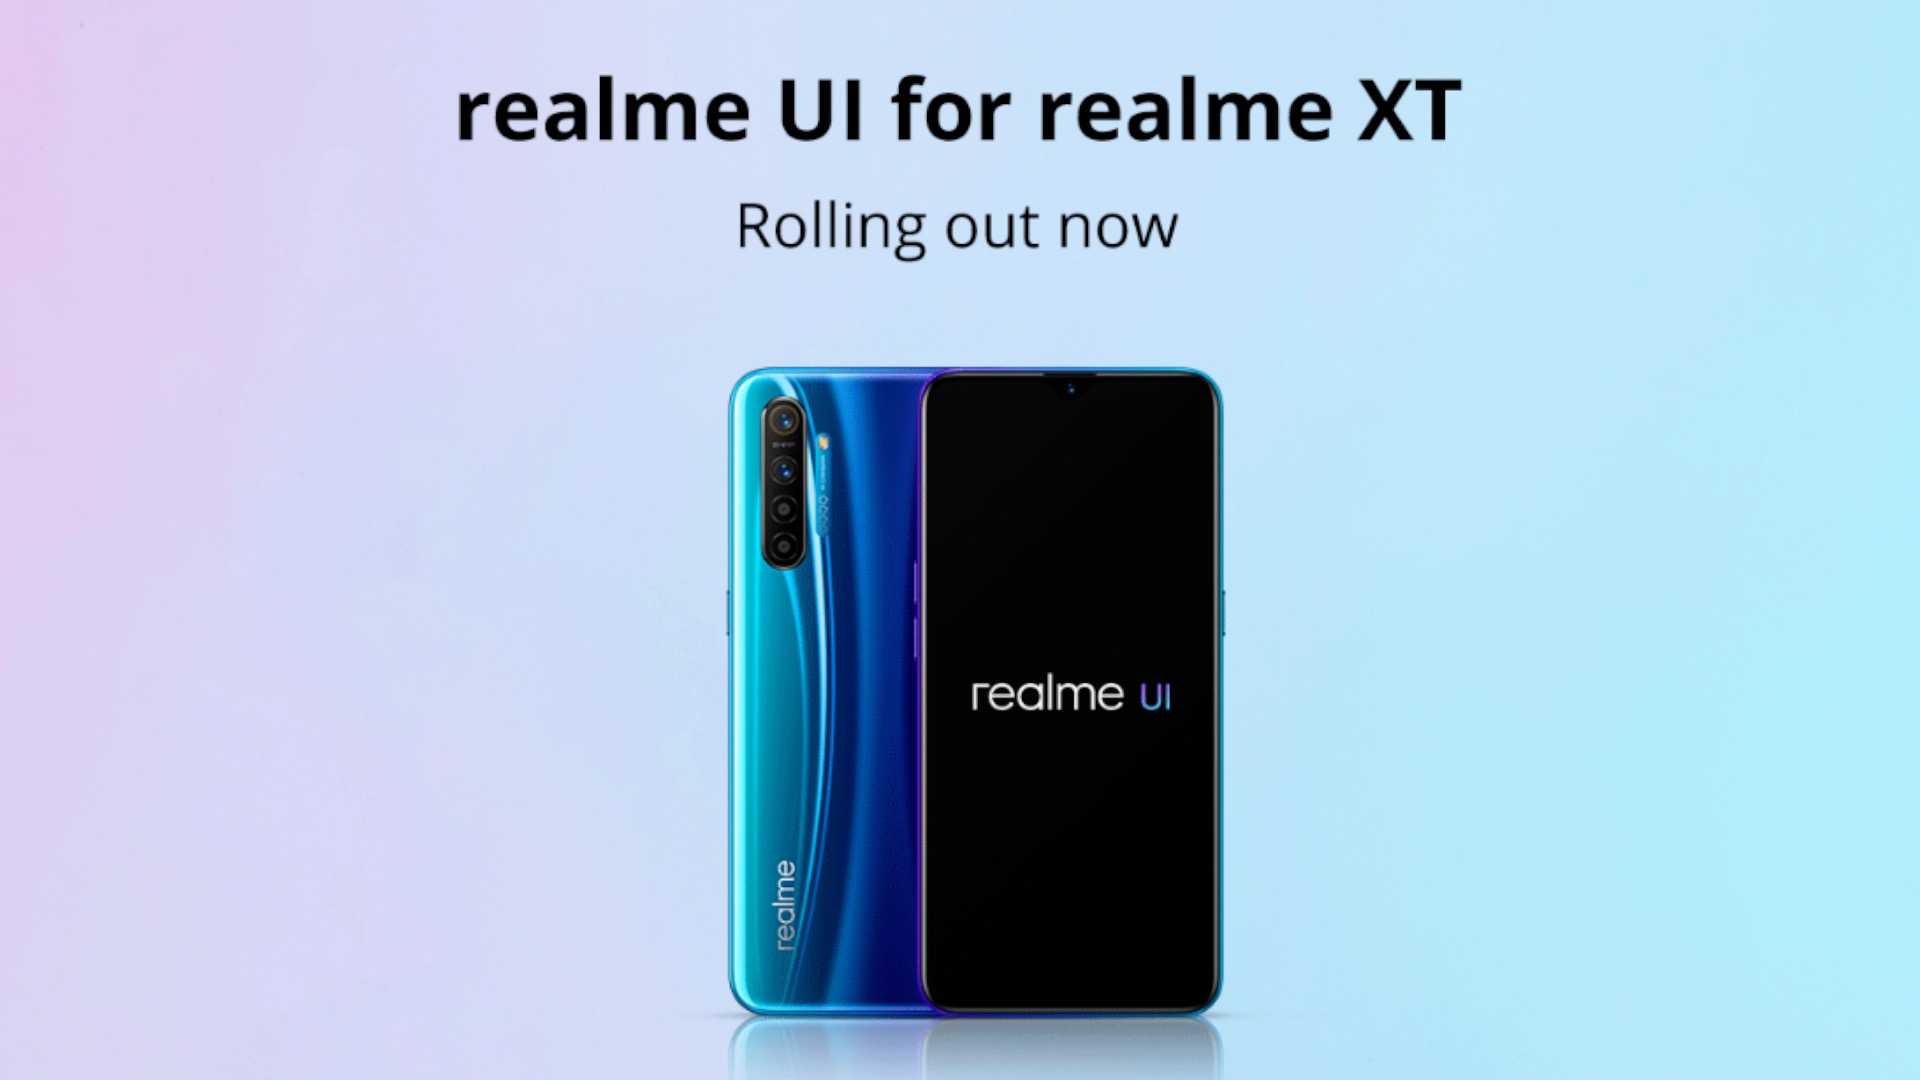 Realme XT: aqui estÃ¡ o Android 10, com Realme UI - GizChina.it